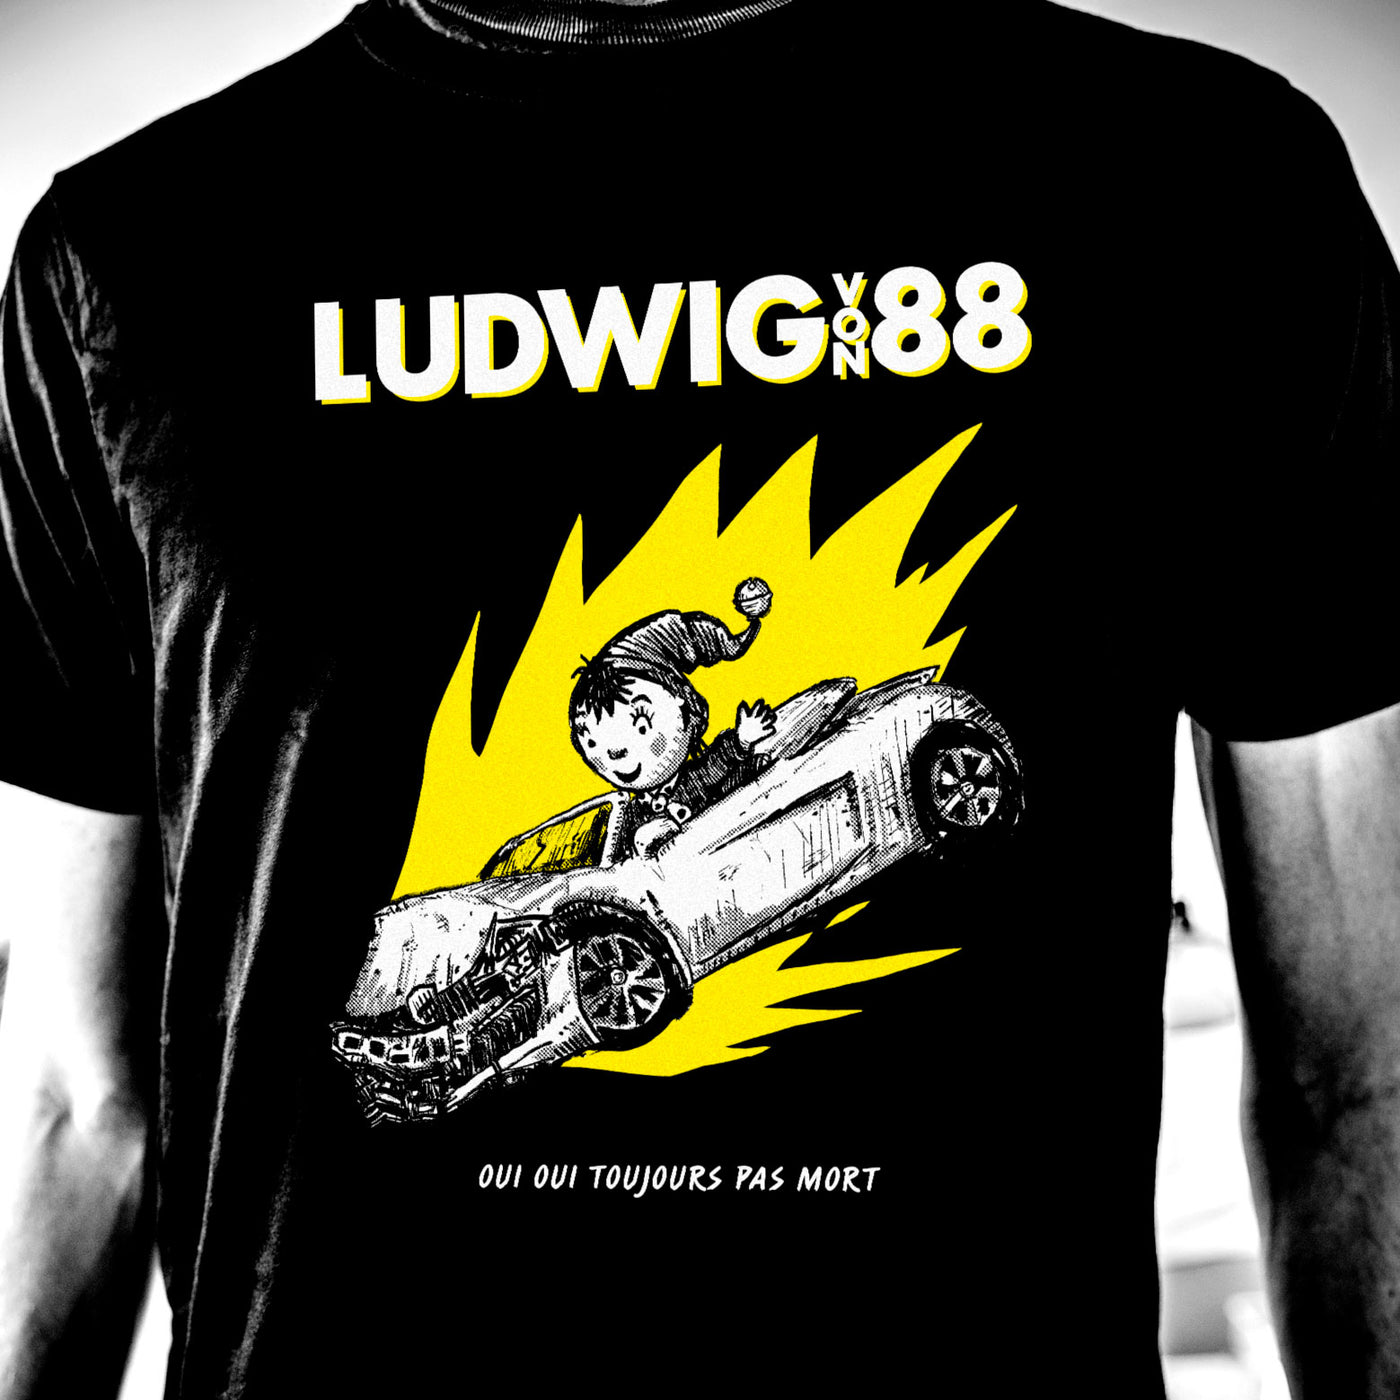 T-shirt Ludwig Von 88 "Oui Oui toujours pas mort", sérigraphie manuelle blanc et jaune sur Tshirt noir